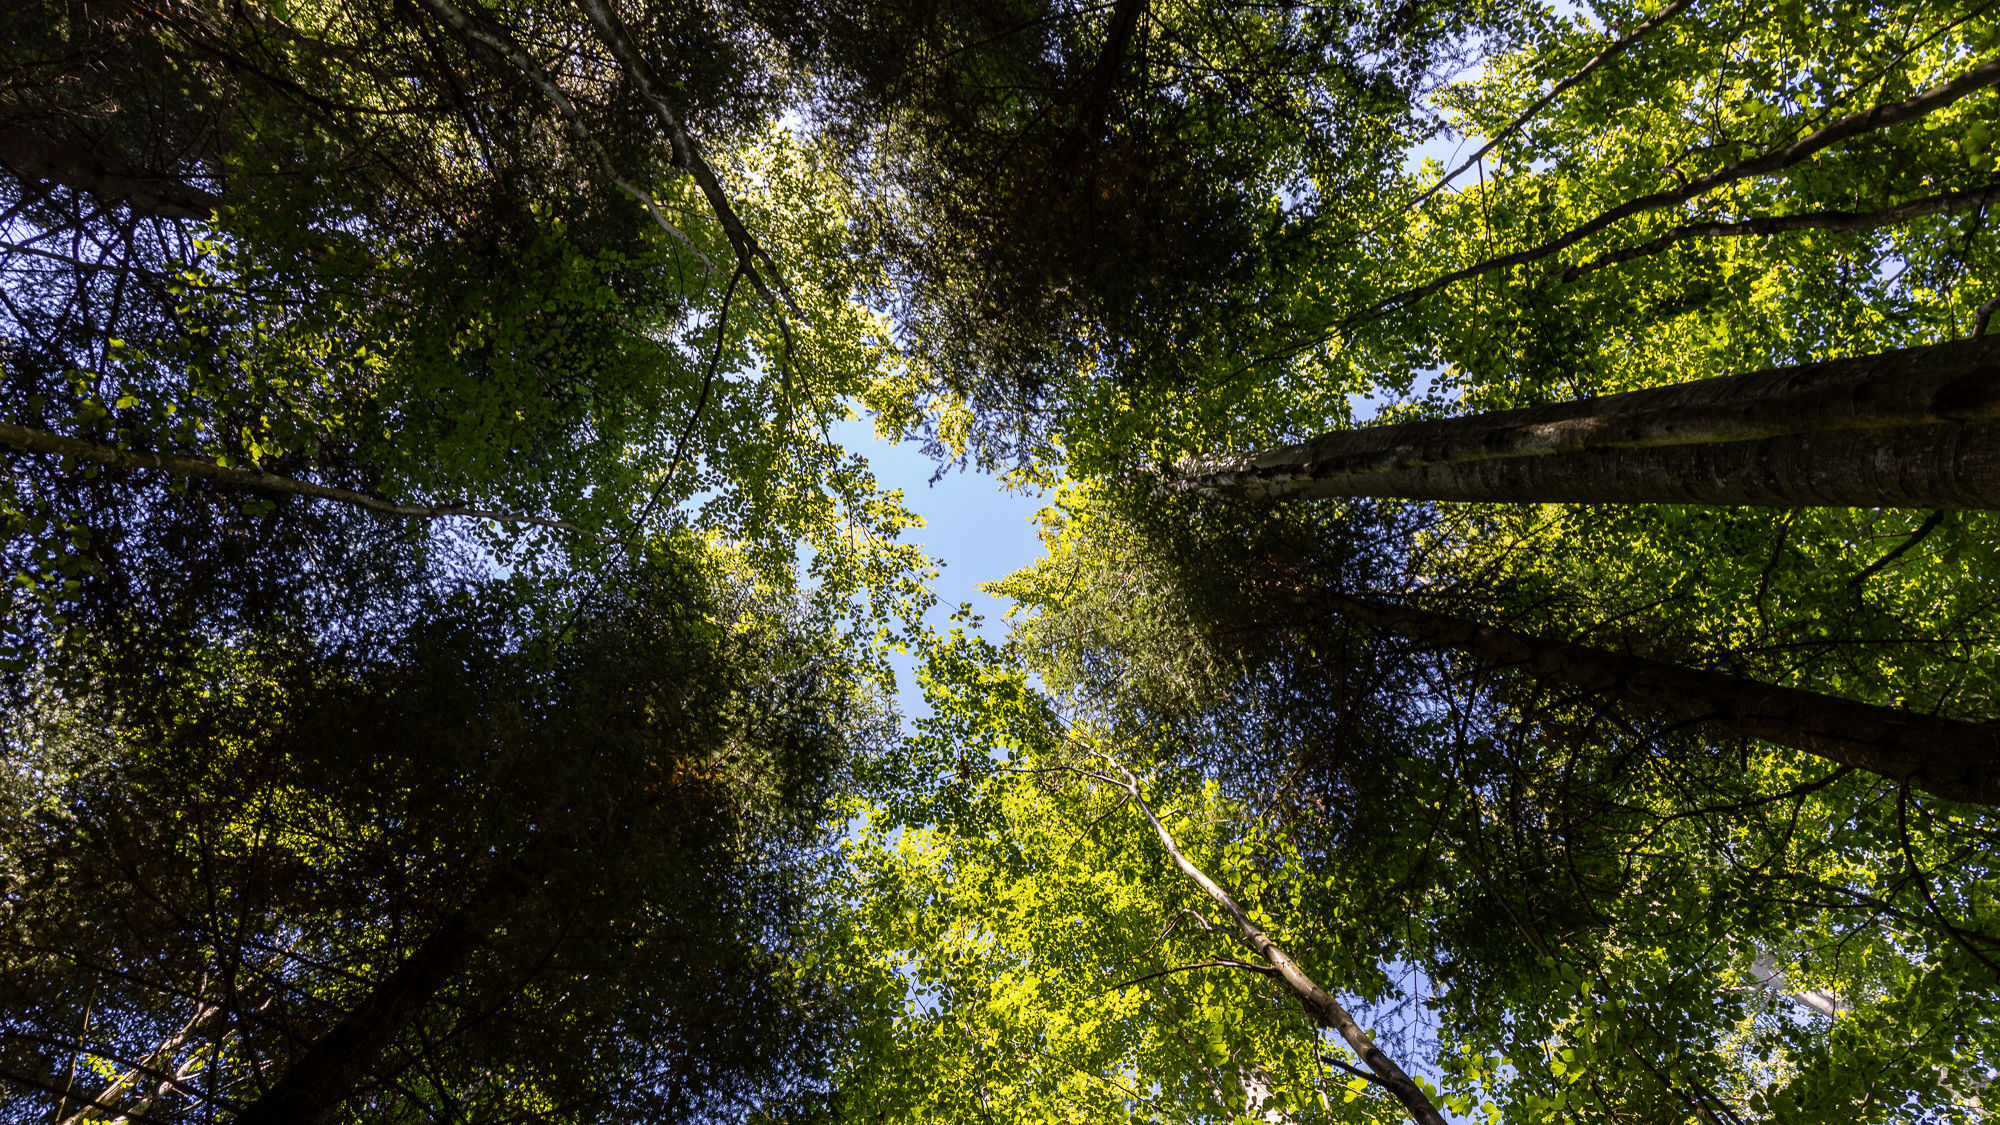 Das Bild zeigt die Perspektive vom Boden aus in die Baumkronen eines Mischwaldes schauend. Man sieht in der Mitte des Bildes ein Stück blauen Himmel.